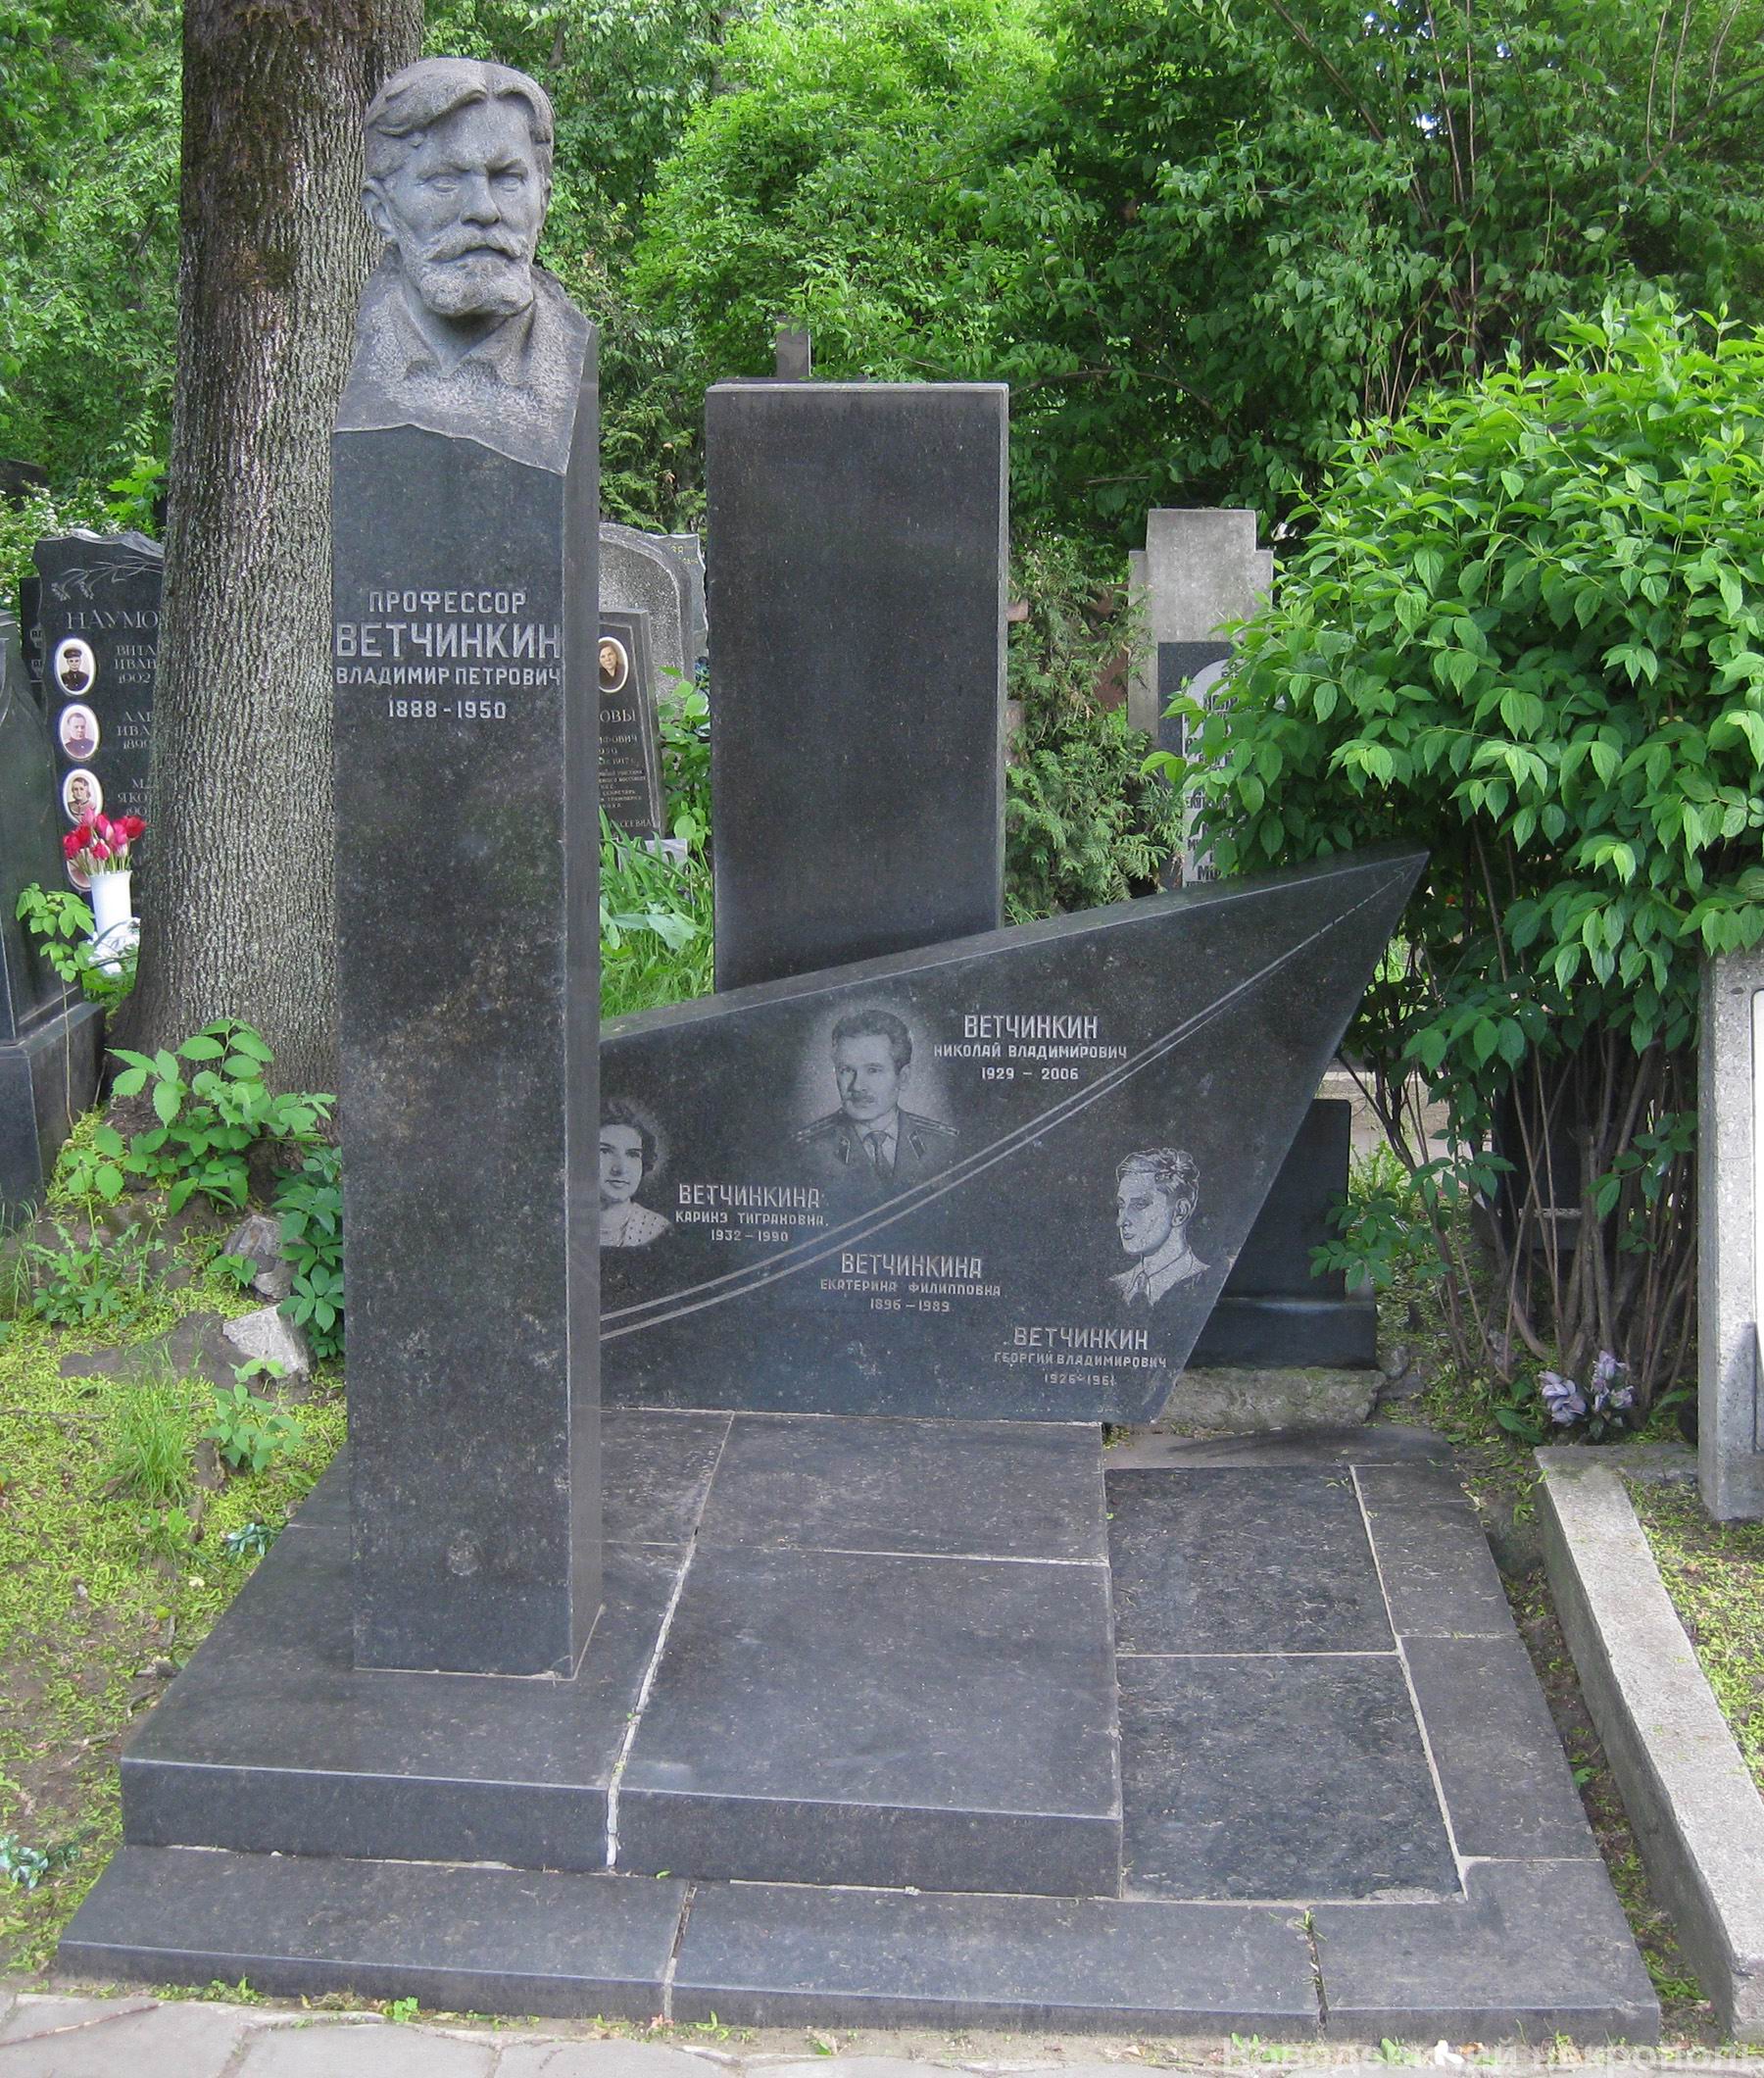 Памятник на могиле Ветчинкина В.П. (1888–1950), ск. З.Виленский, арх. М.Виленская, на Новодевичьем кладбище (3–56–3). Нажмите левую кнопку мыши, чтобы увидеть фрагмент памятника крупно.